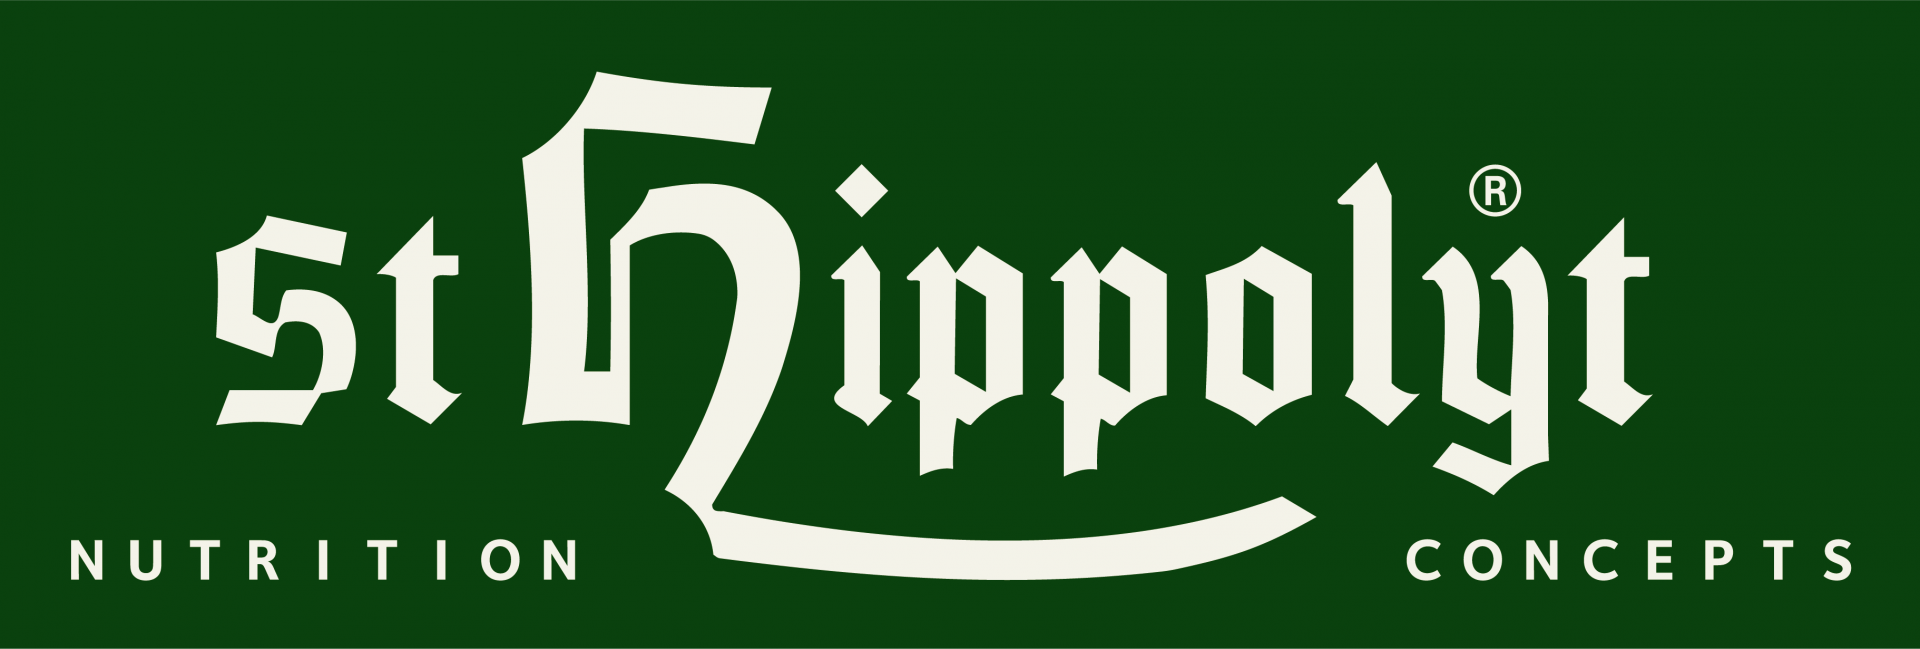 EC22_Logo_St_Hippolyt